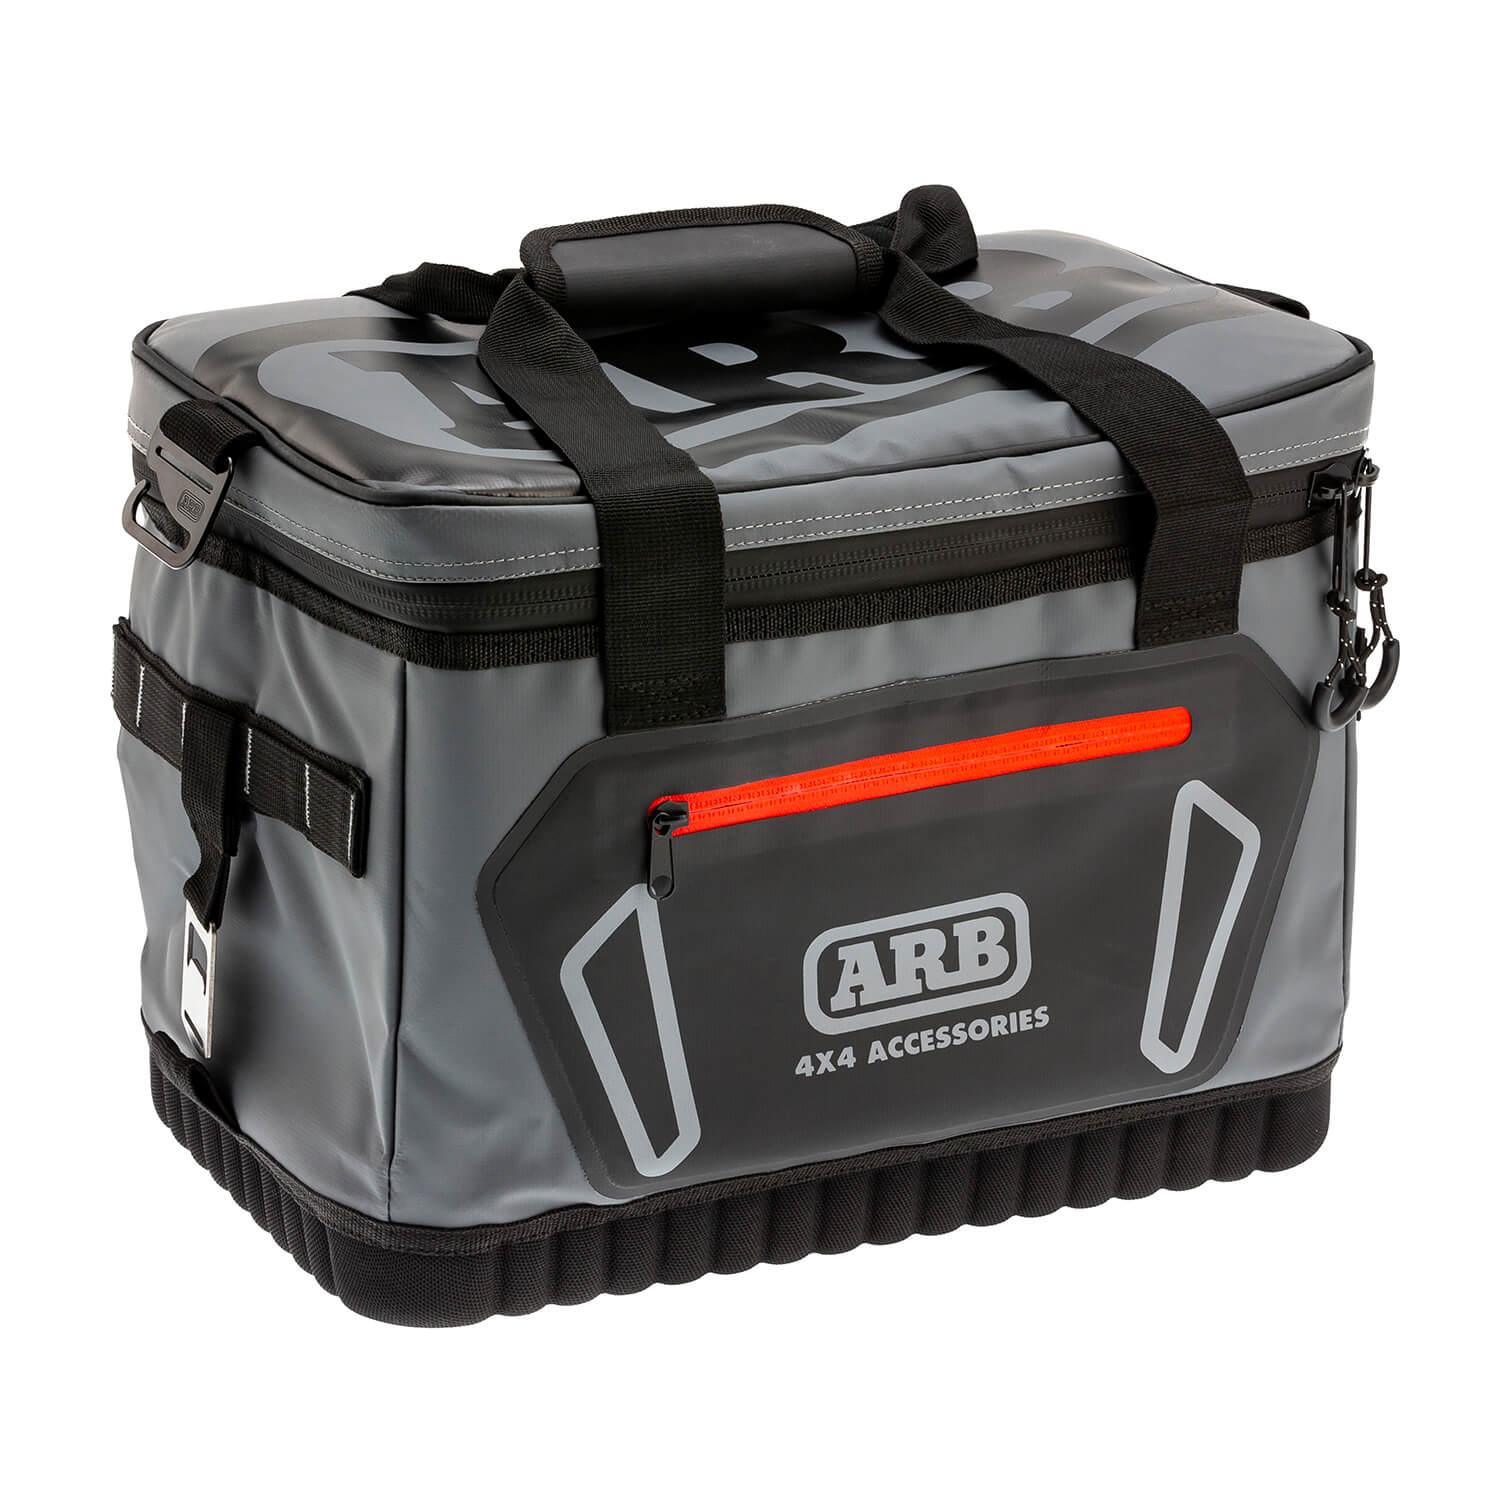 ARB 10100376 Carry Bag